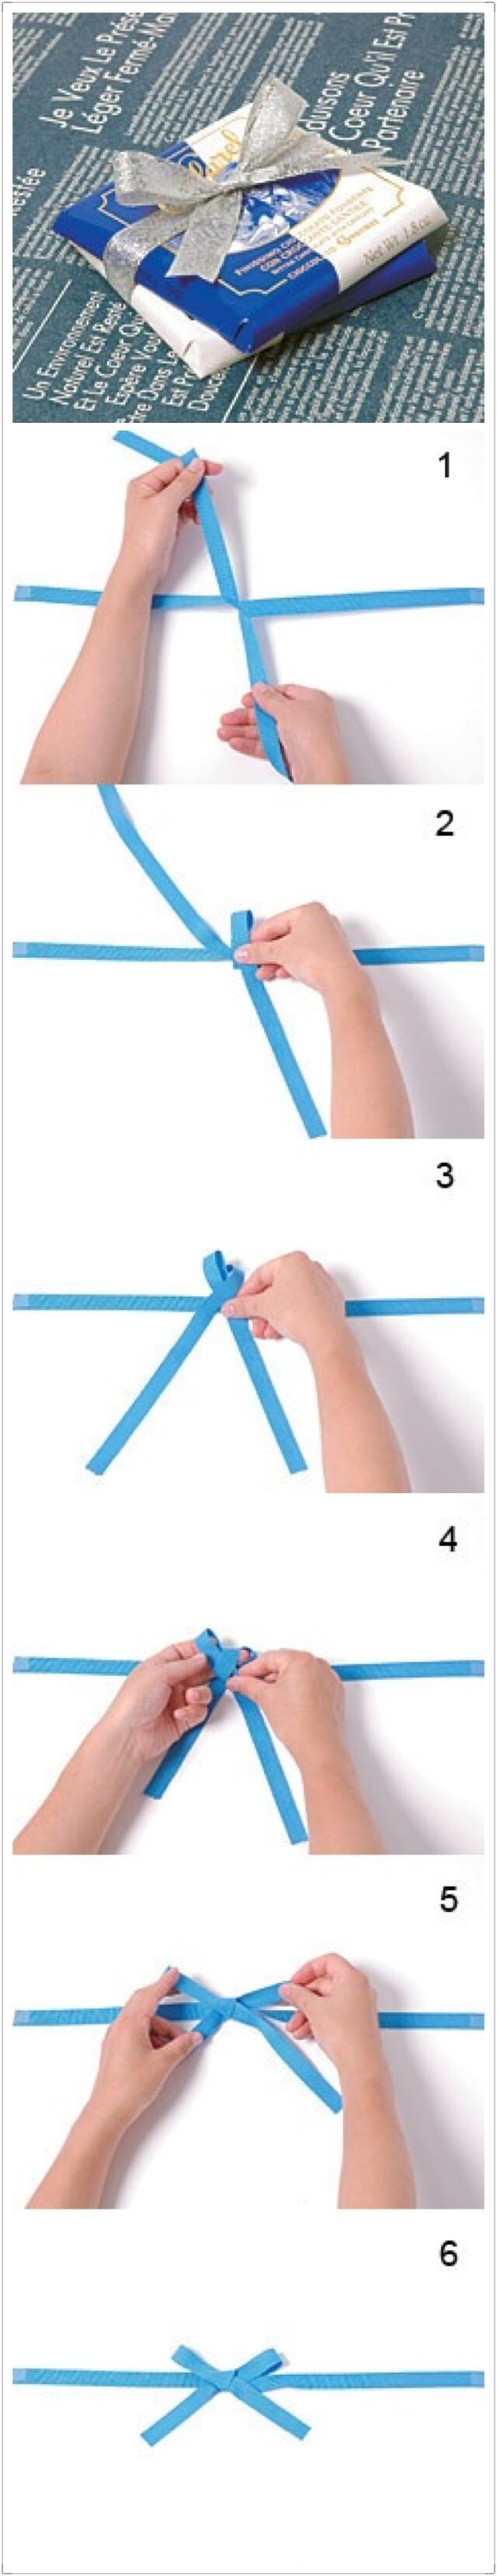 蝴蝶结的系法: 1把丝带的两头打一个结 2